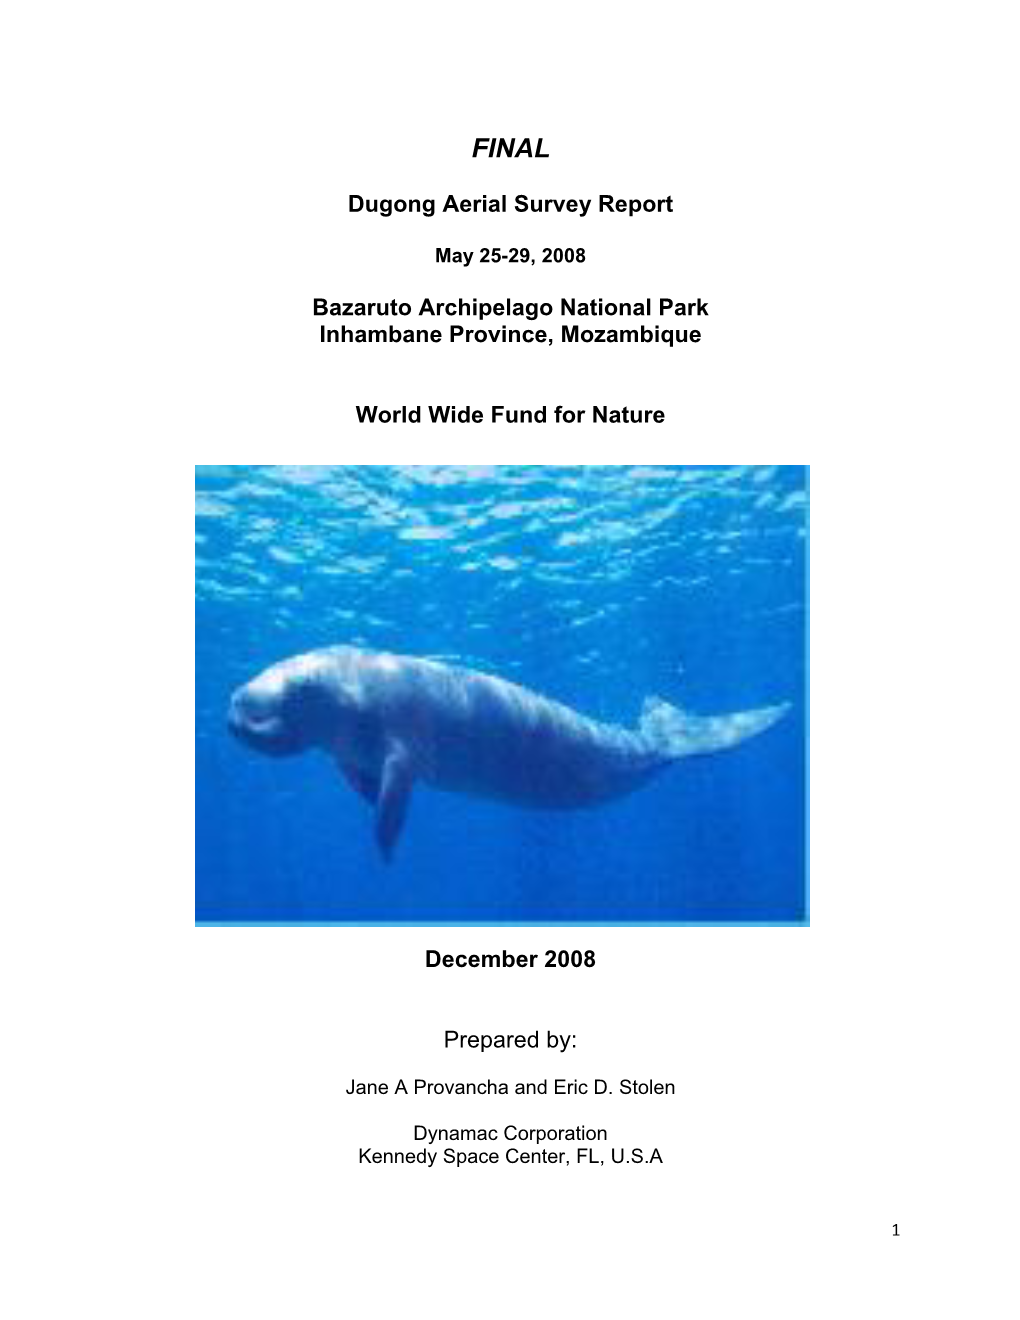 Dugong Aerial Survey Report Bazaruto Archipelago